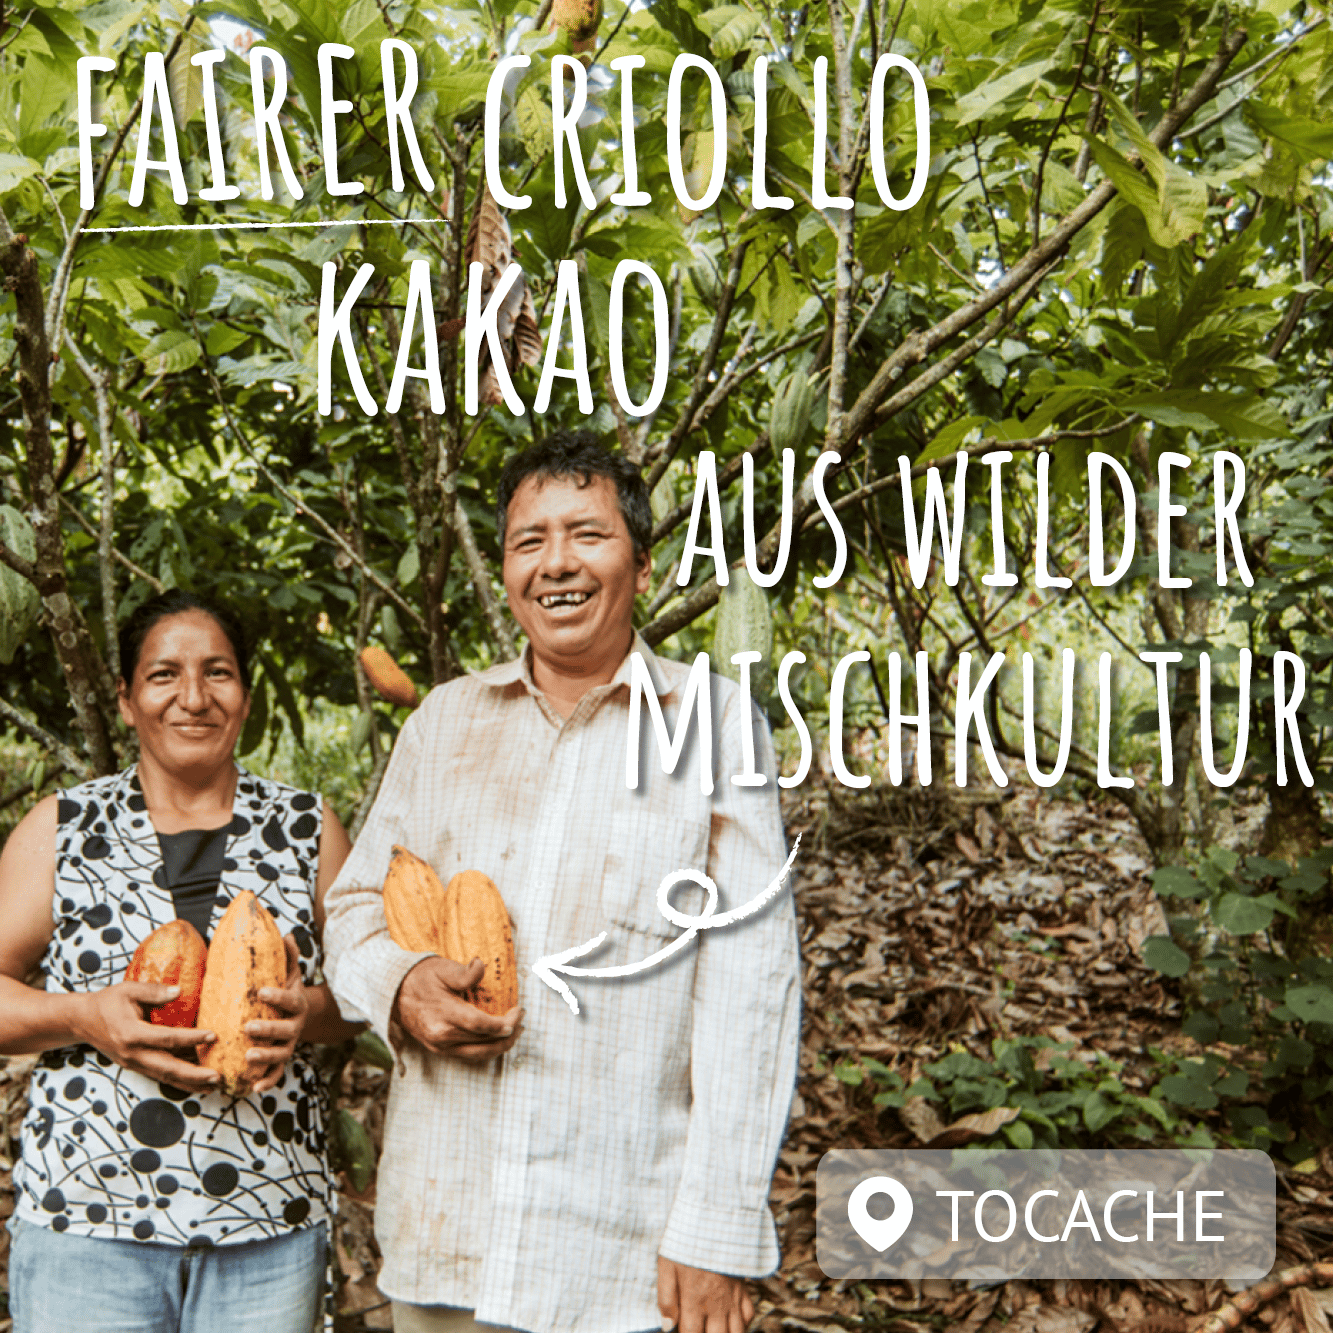 peruanisches bauernpaar mit kakaobohnen in der hand vor kakaobäumen